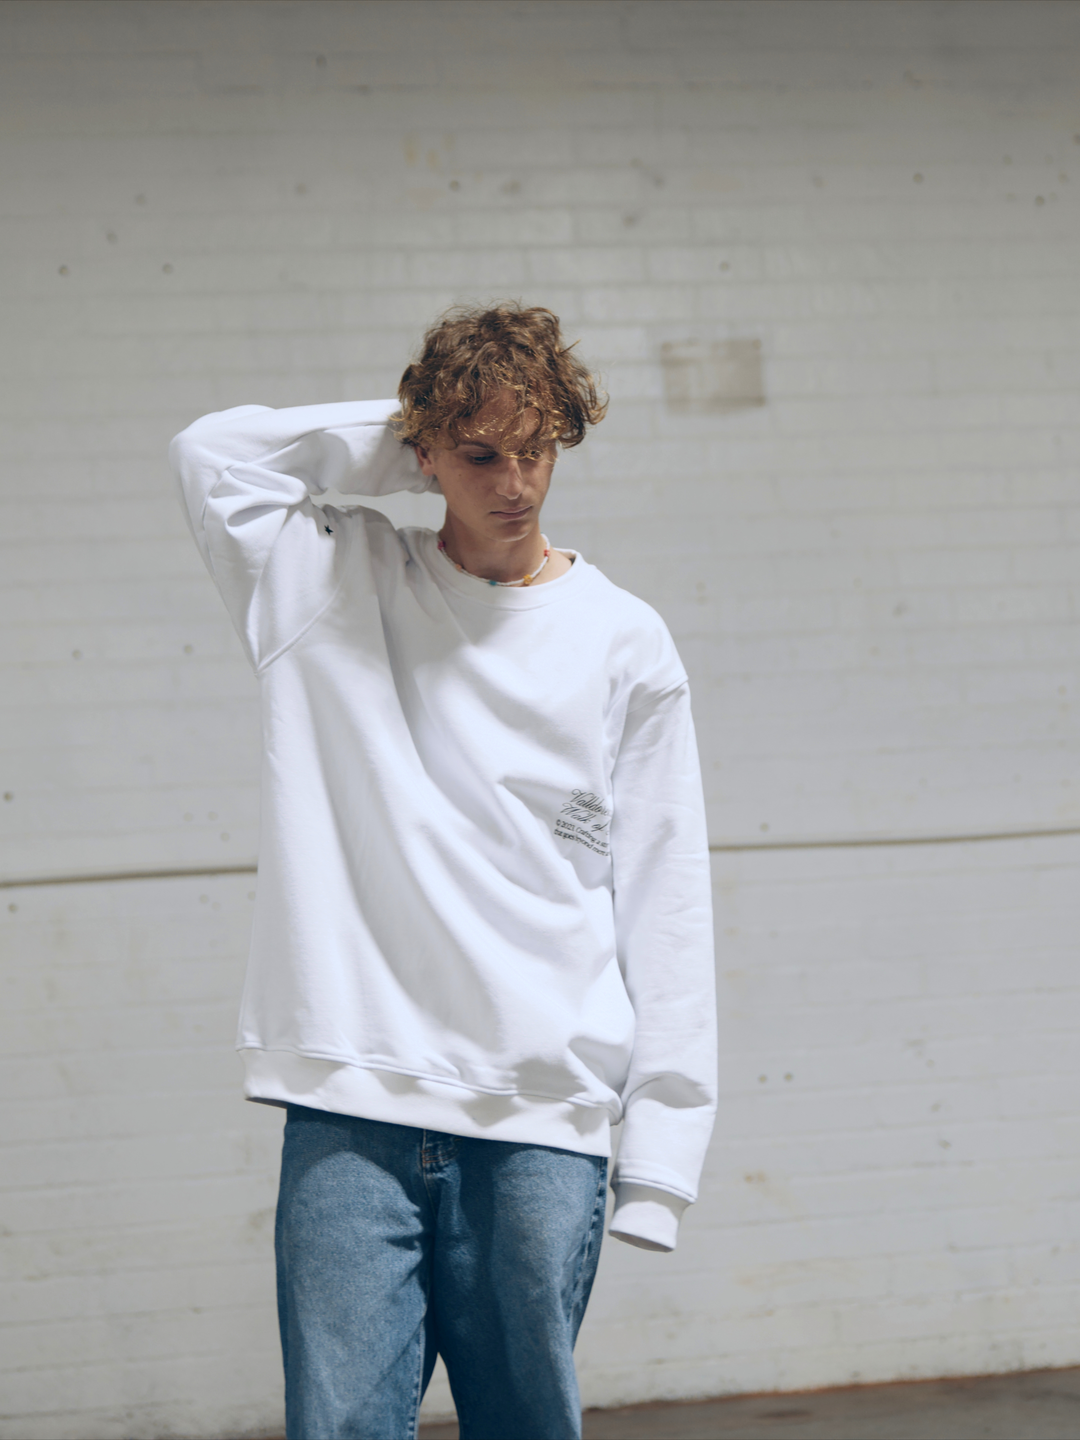 Male apparel model posing outside wearing a white long sleeve sweater.